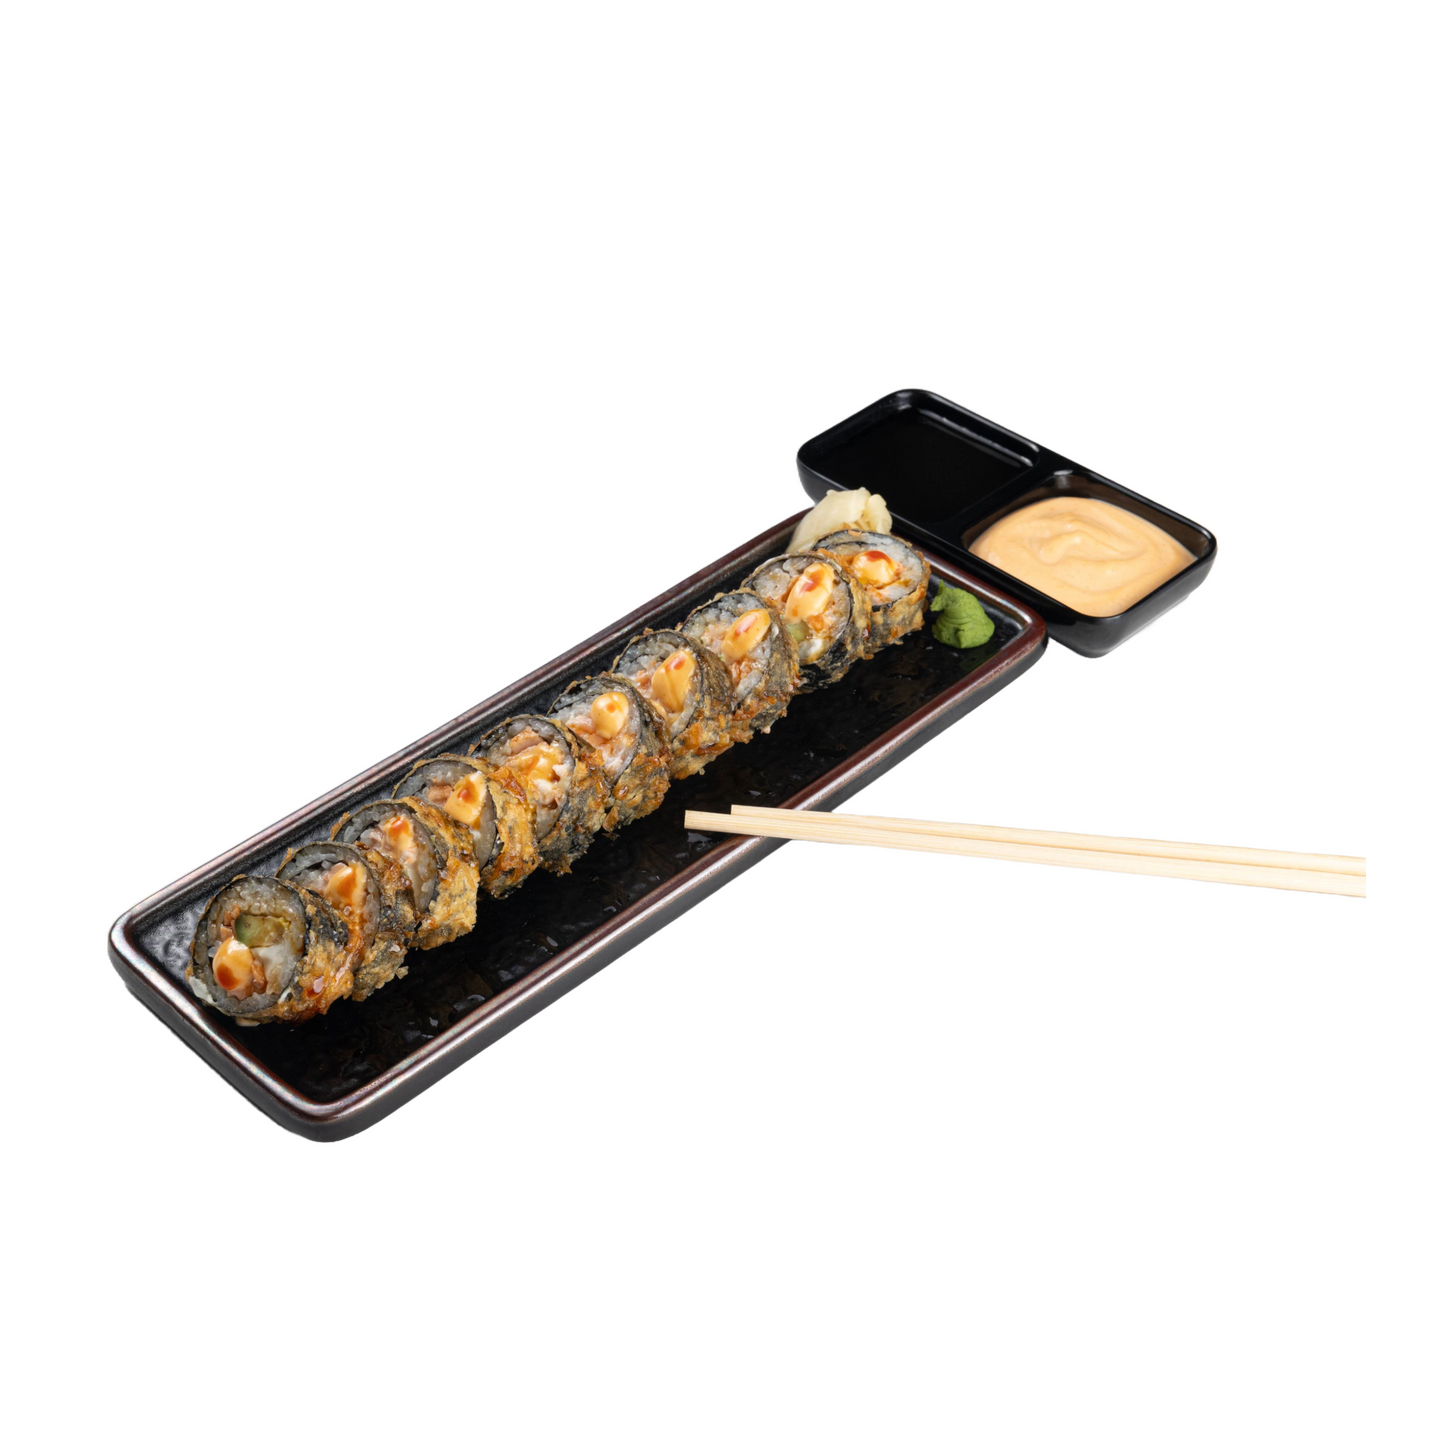 Sushi Prime Platter -6 Rolls 48 pcs